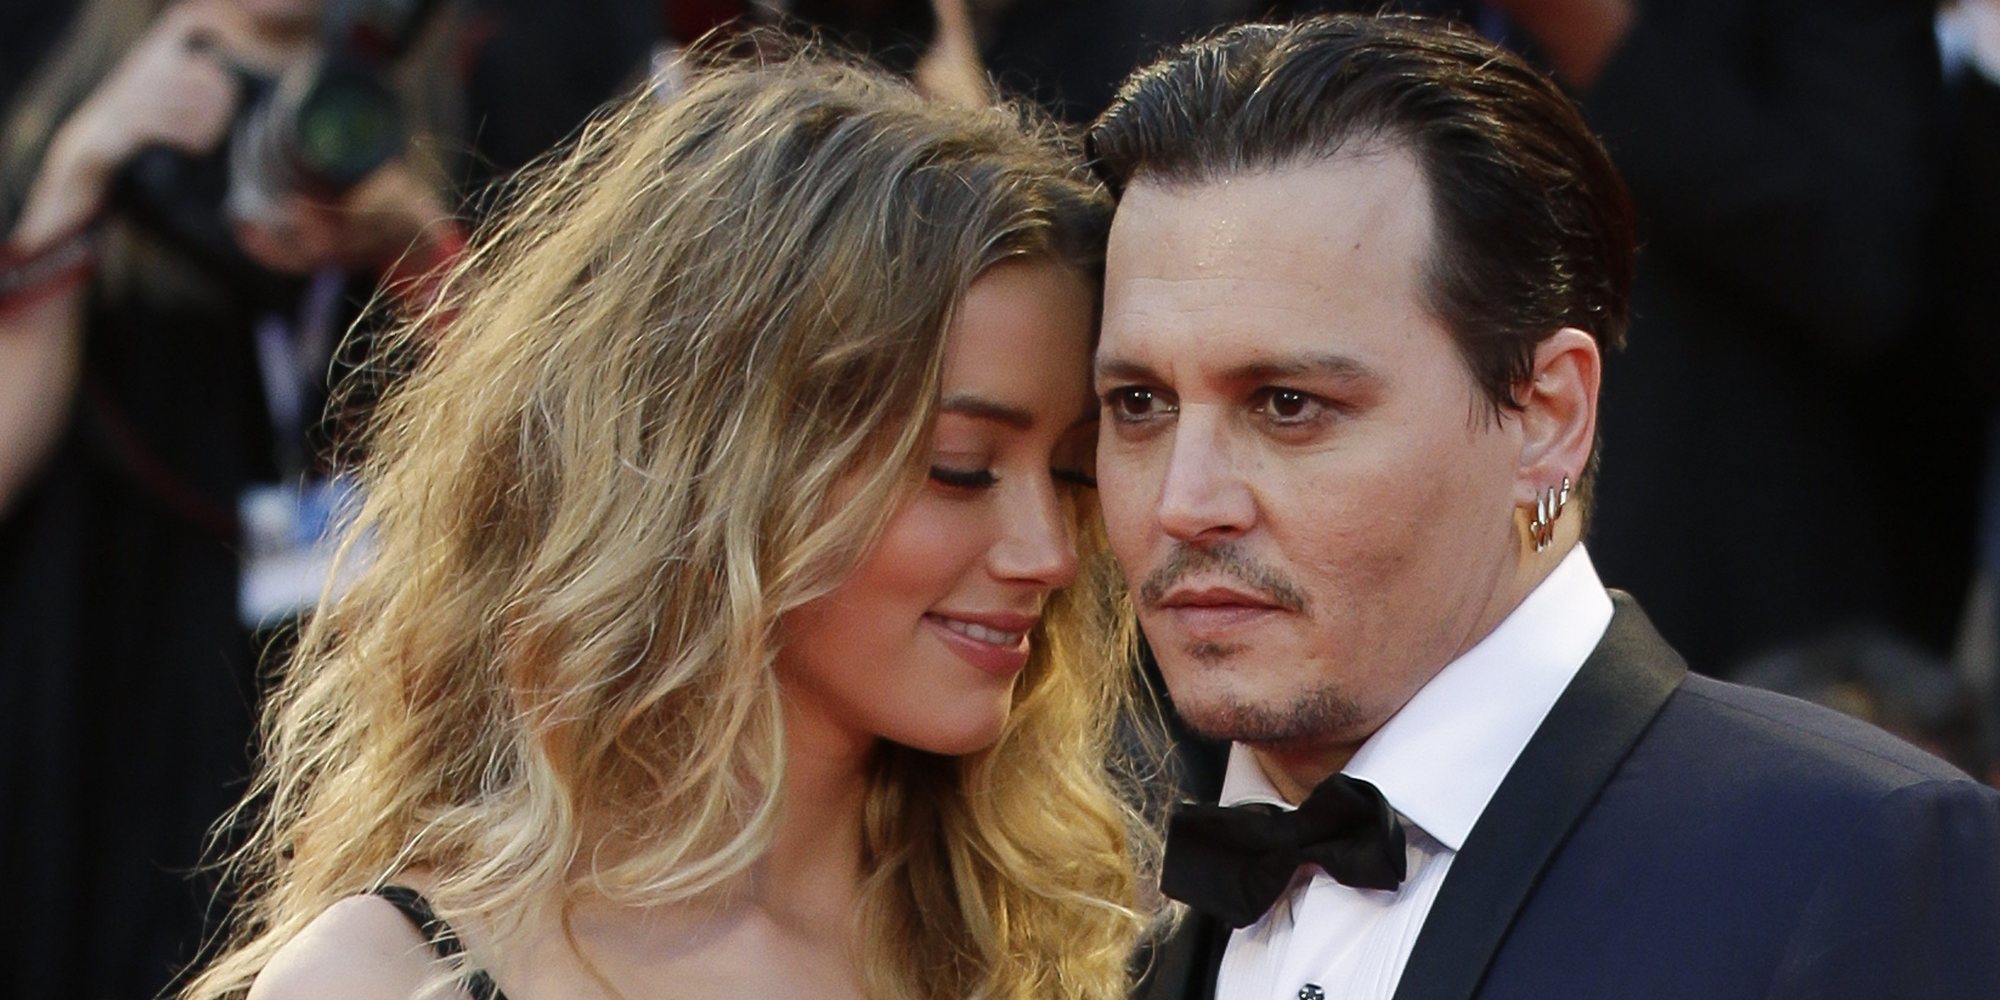 Johnny Depp cuenta que sufrió una grave depresión tras su divorcio de Amber Heard y la muerte de su madre